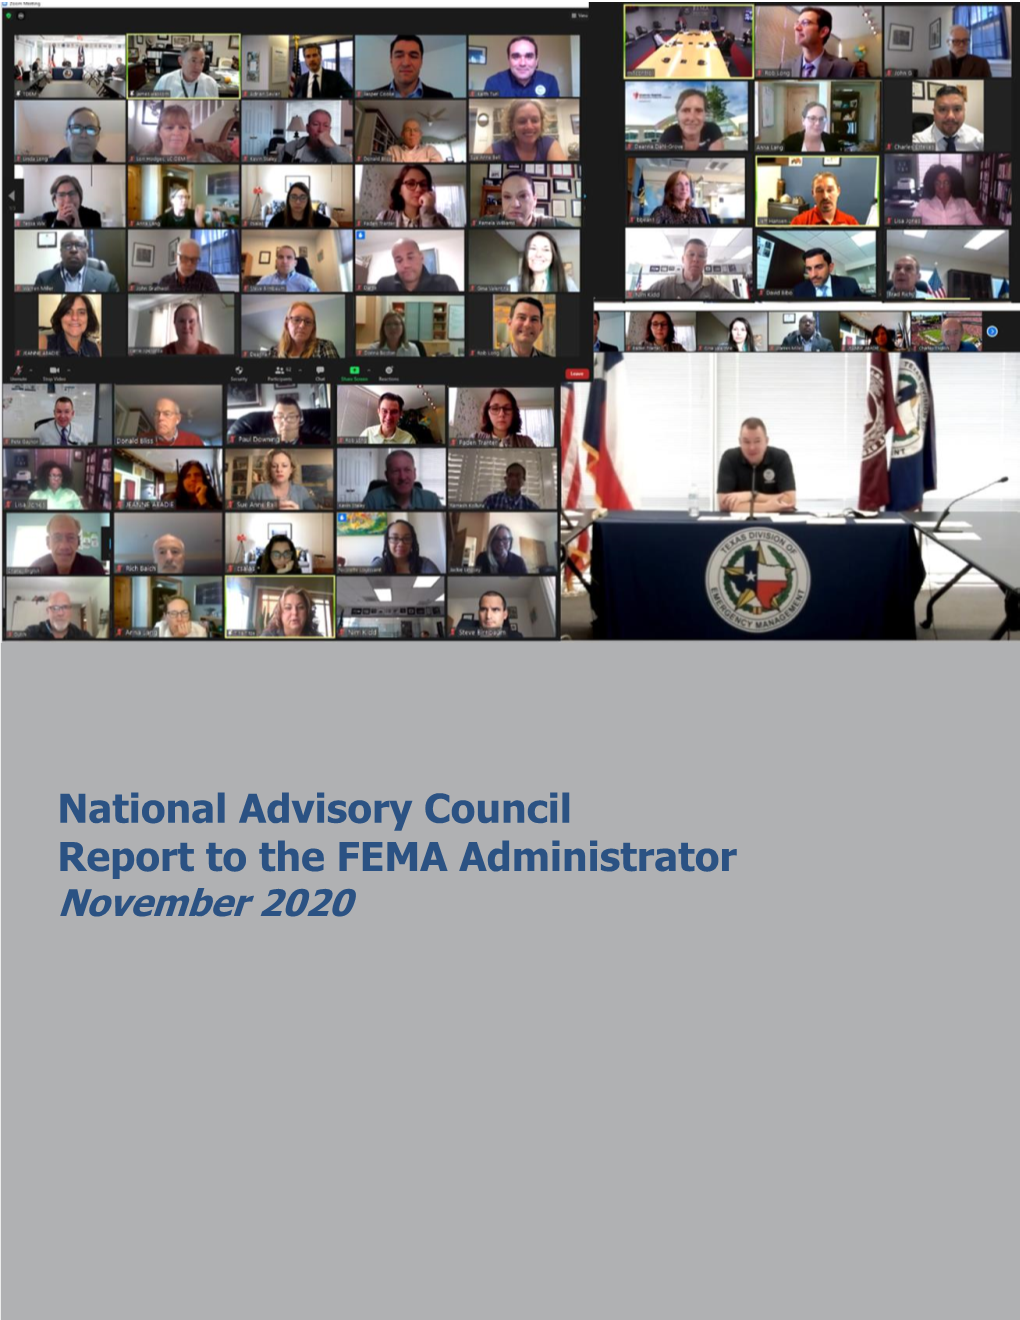 November 2020 FEMA National Advisory Council Report to the Administrator